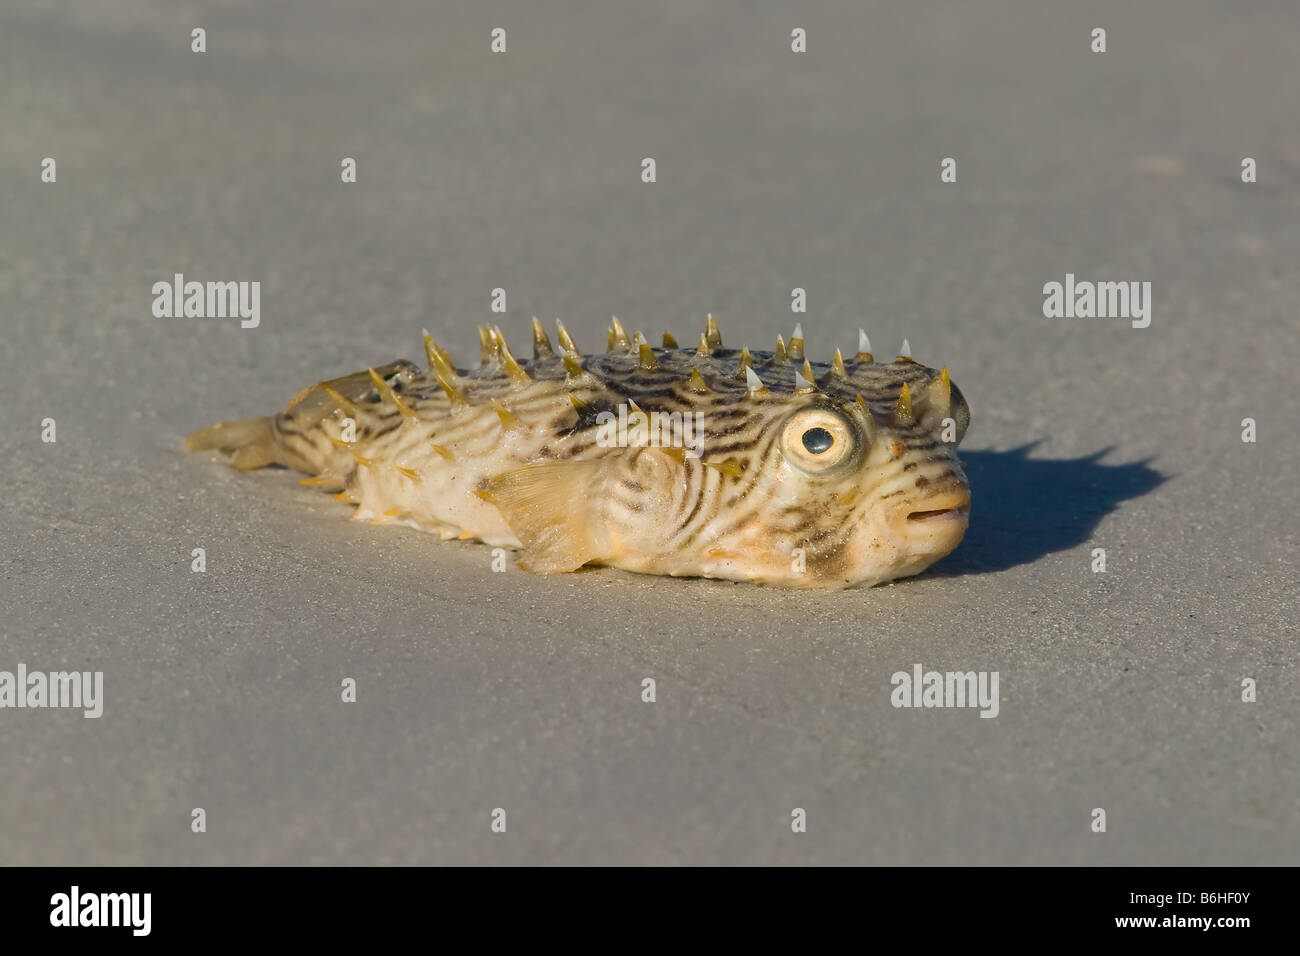 Un pez laurino de rayas (Chilomycterus schoepfii) muerto en la playa. Foto de stock